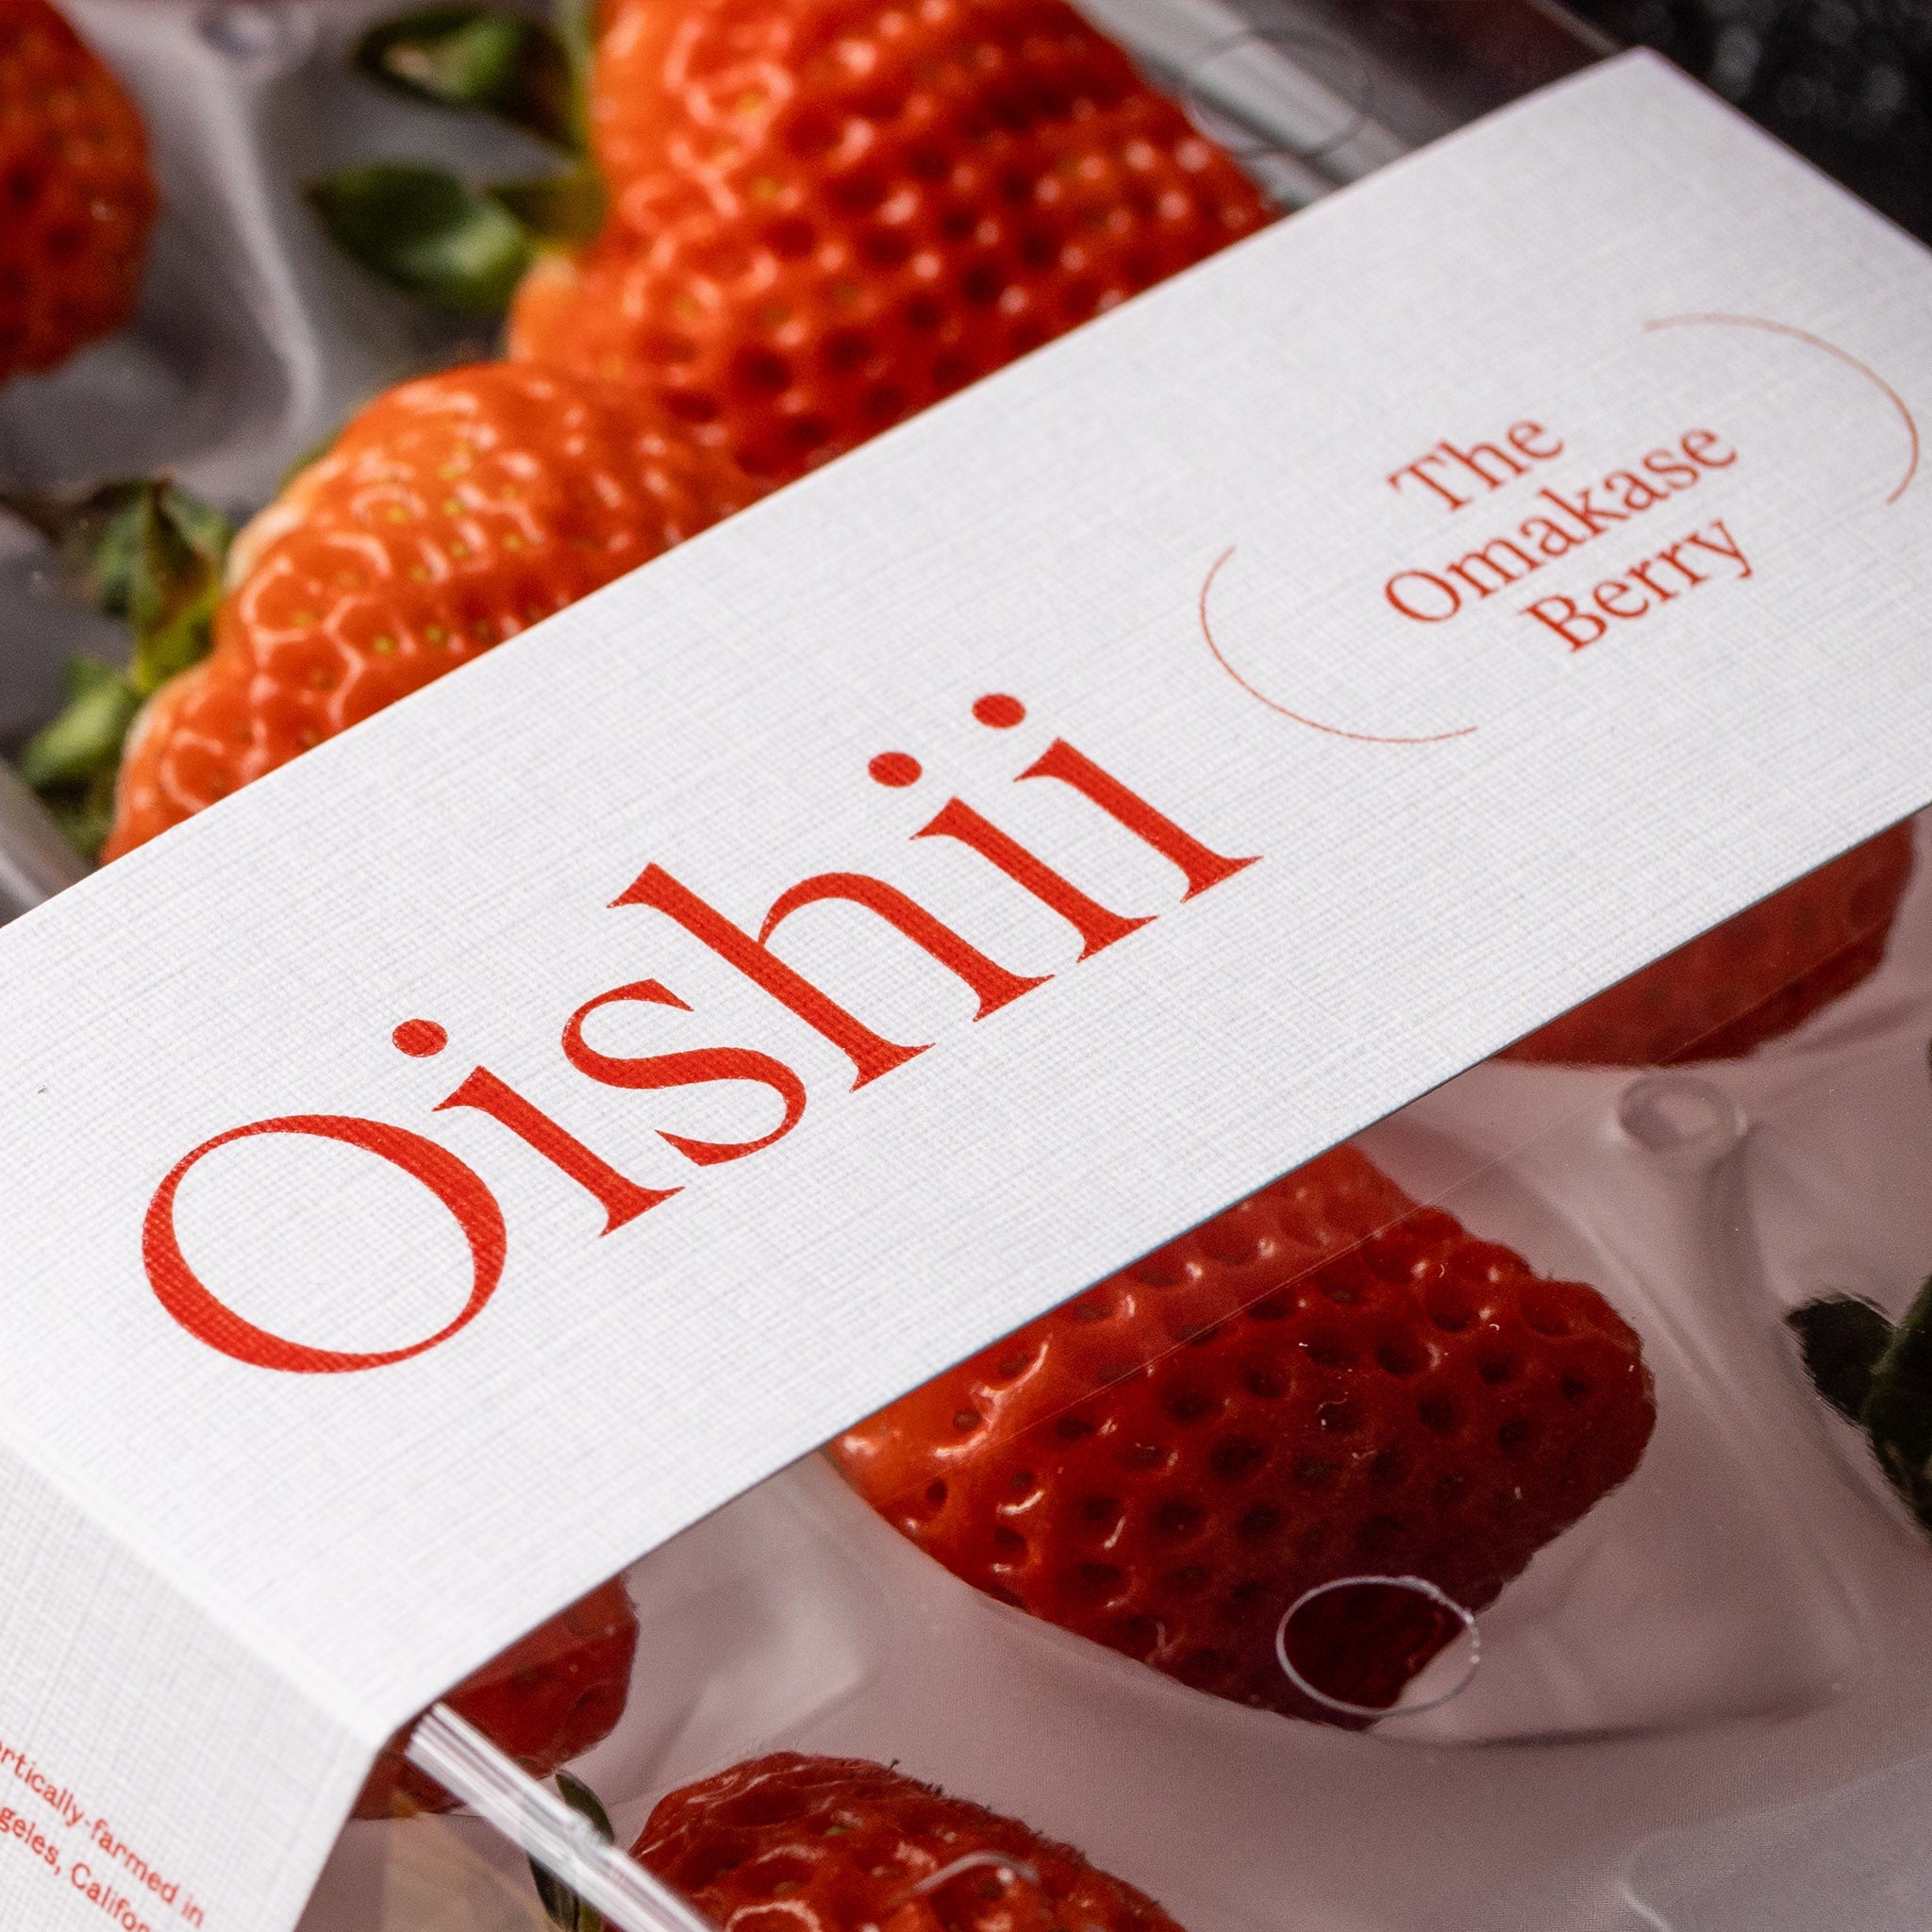 TYSM X Oishii: Omakase Berry Valentine's Day Arrangement